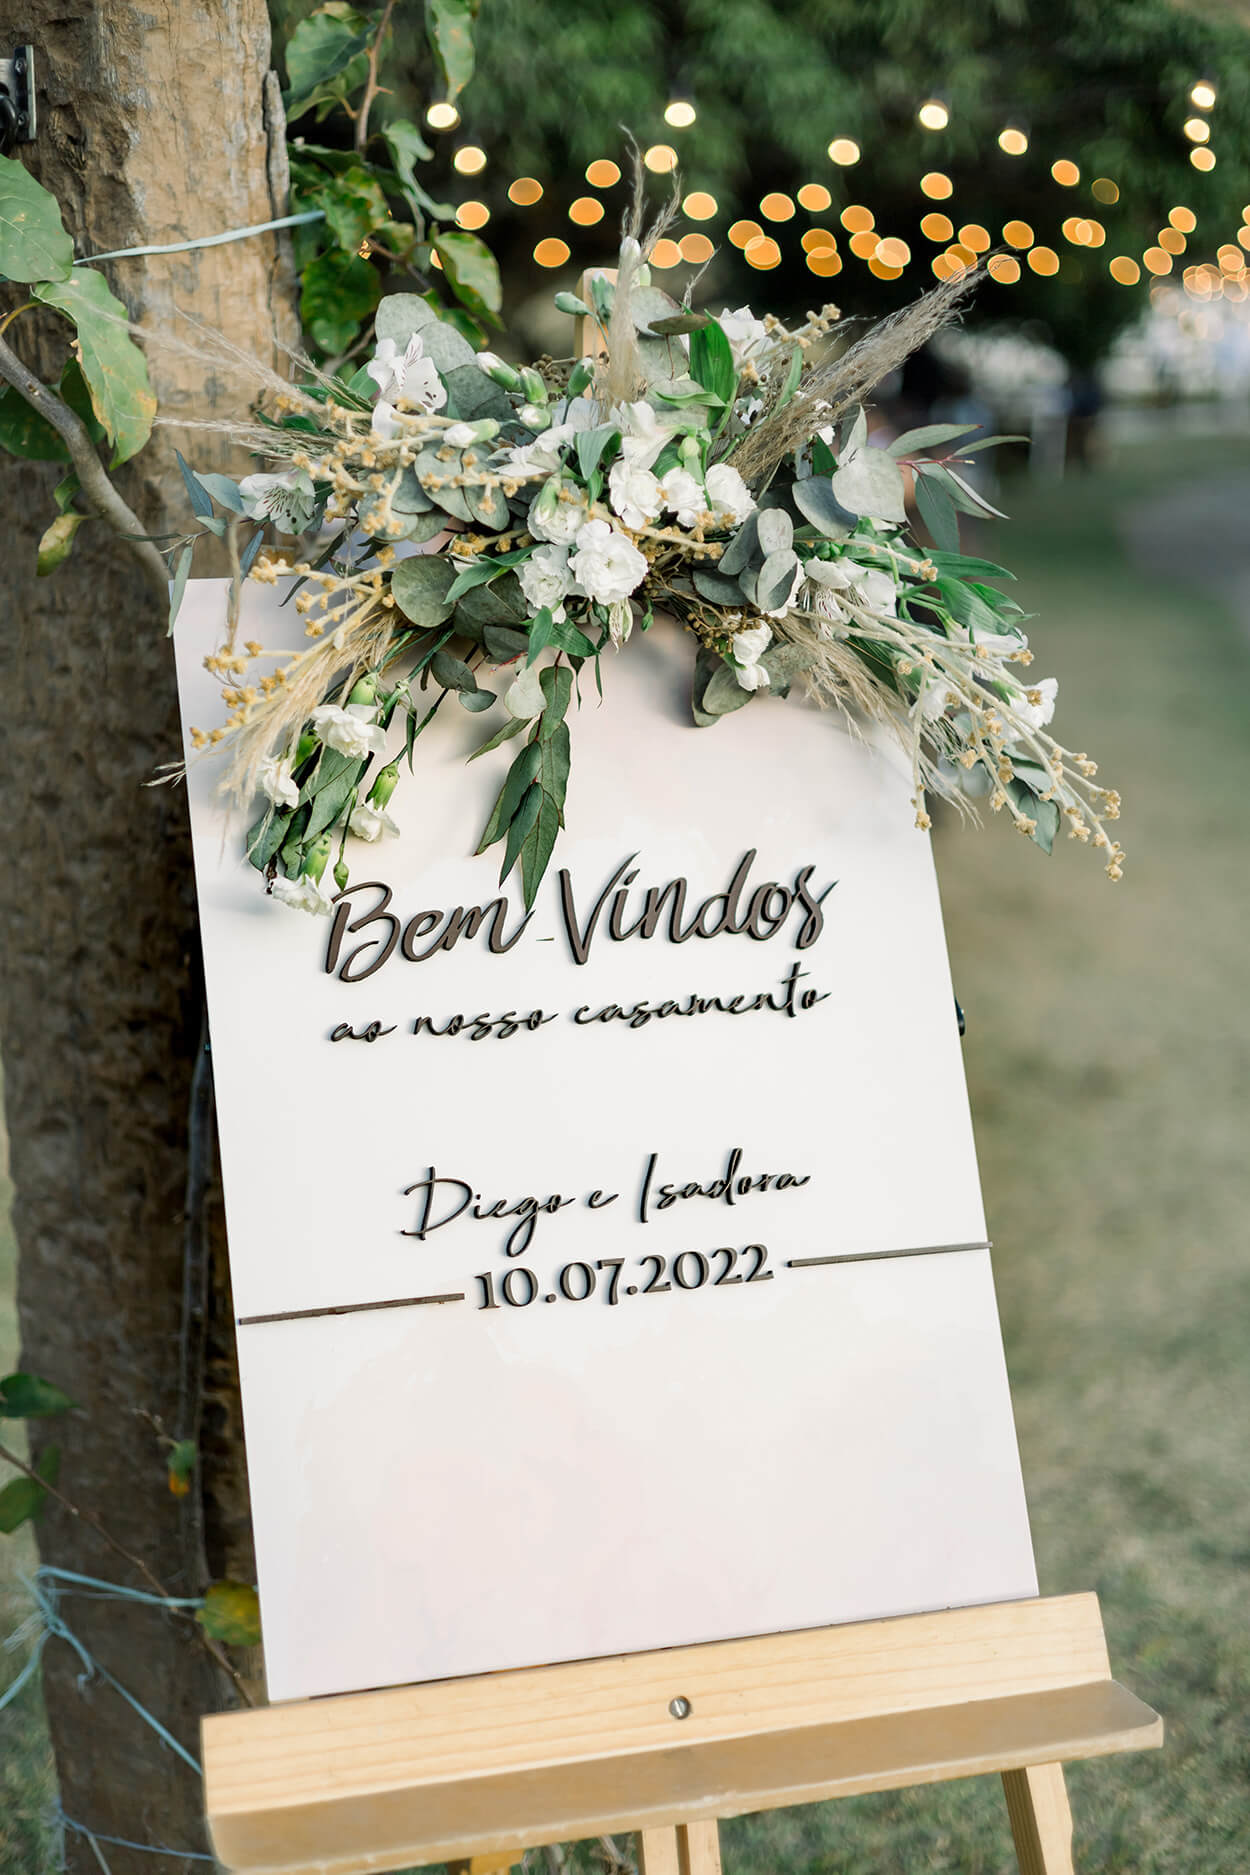 cavalete com placa escrito bem-vindos com arranjo de flores brancas